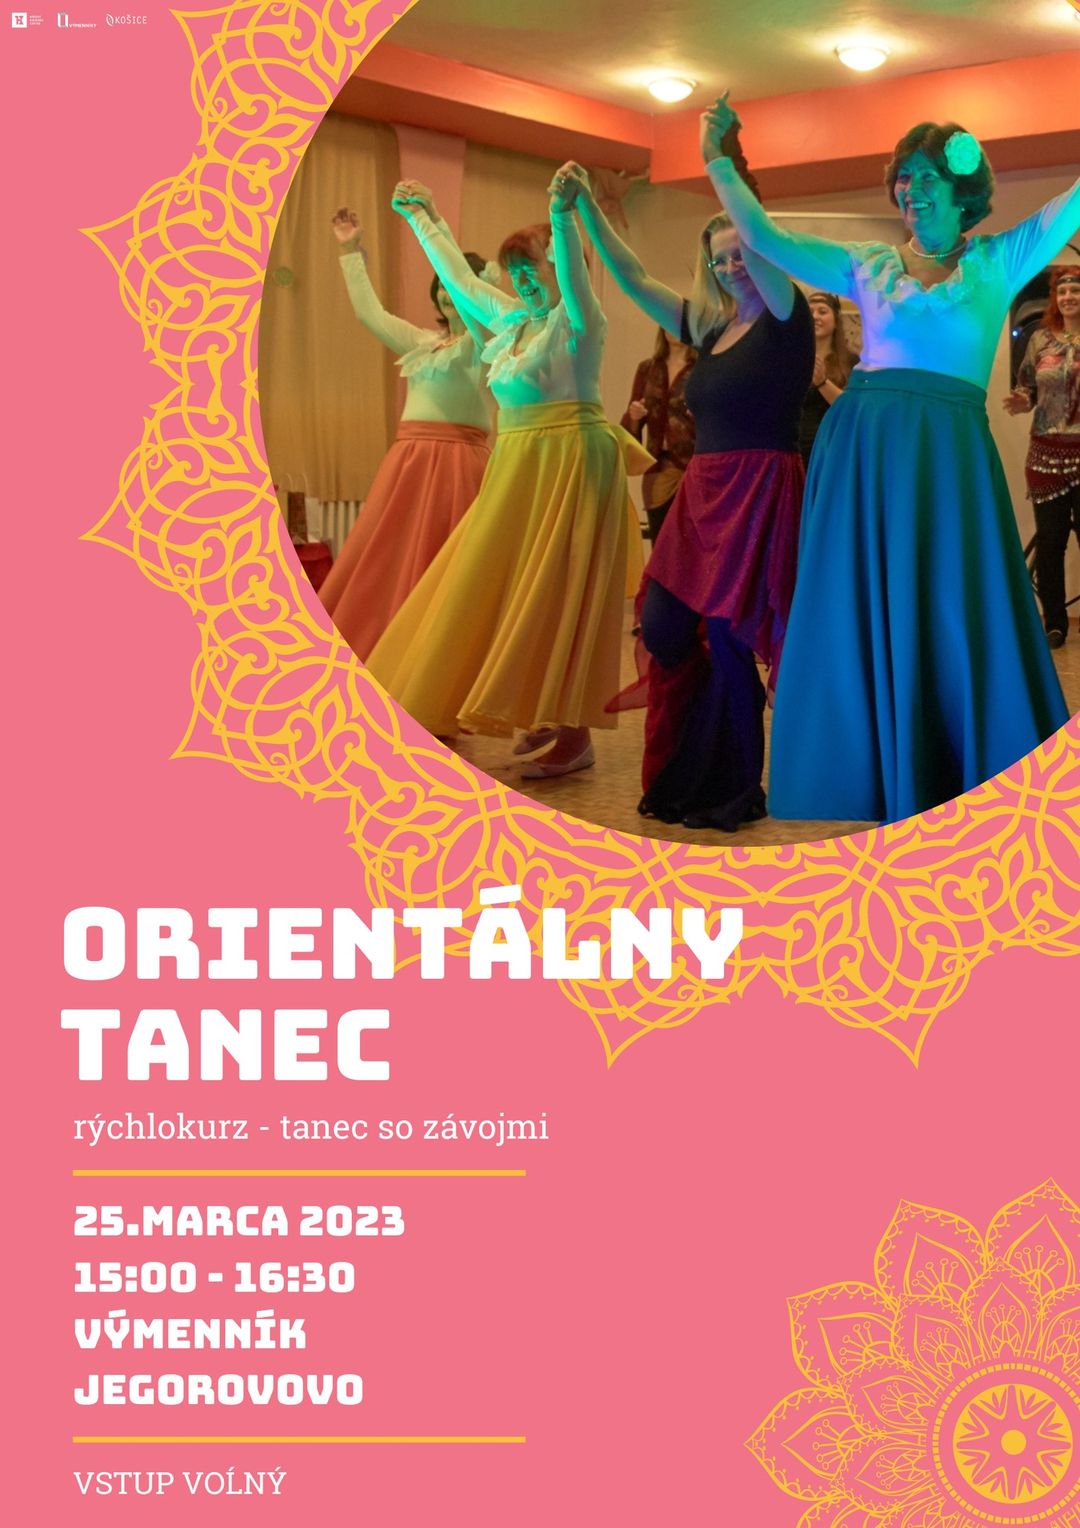 Orientálny tanec - tanec so závojmi Výmenník Jegorovovo